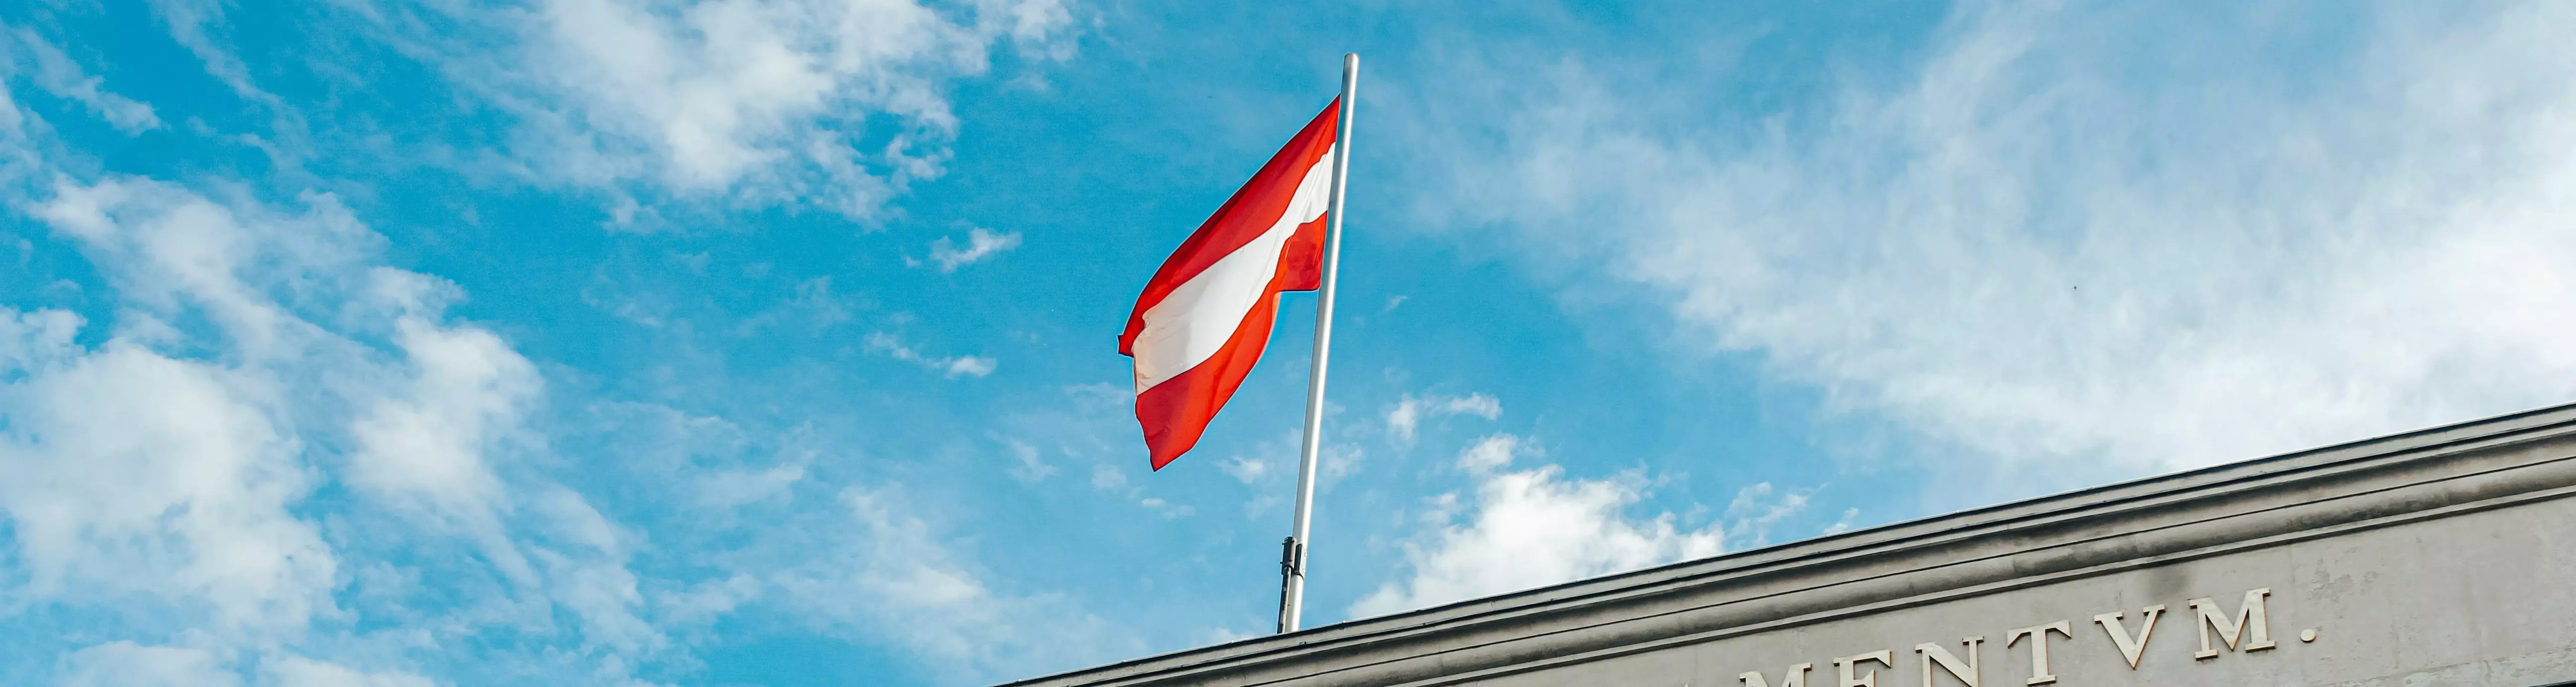 Österreichische Flagge über Parlament vor blauen Himmel mit Wolken